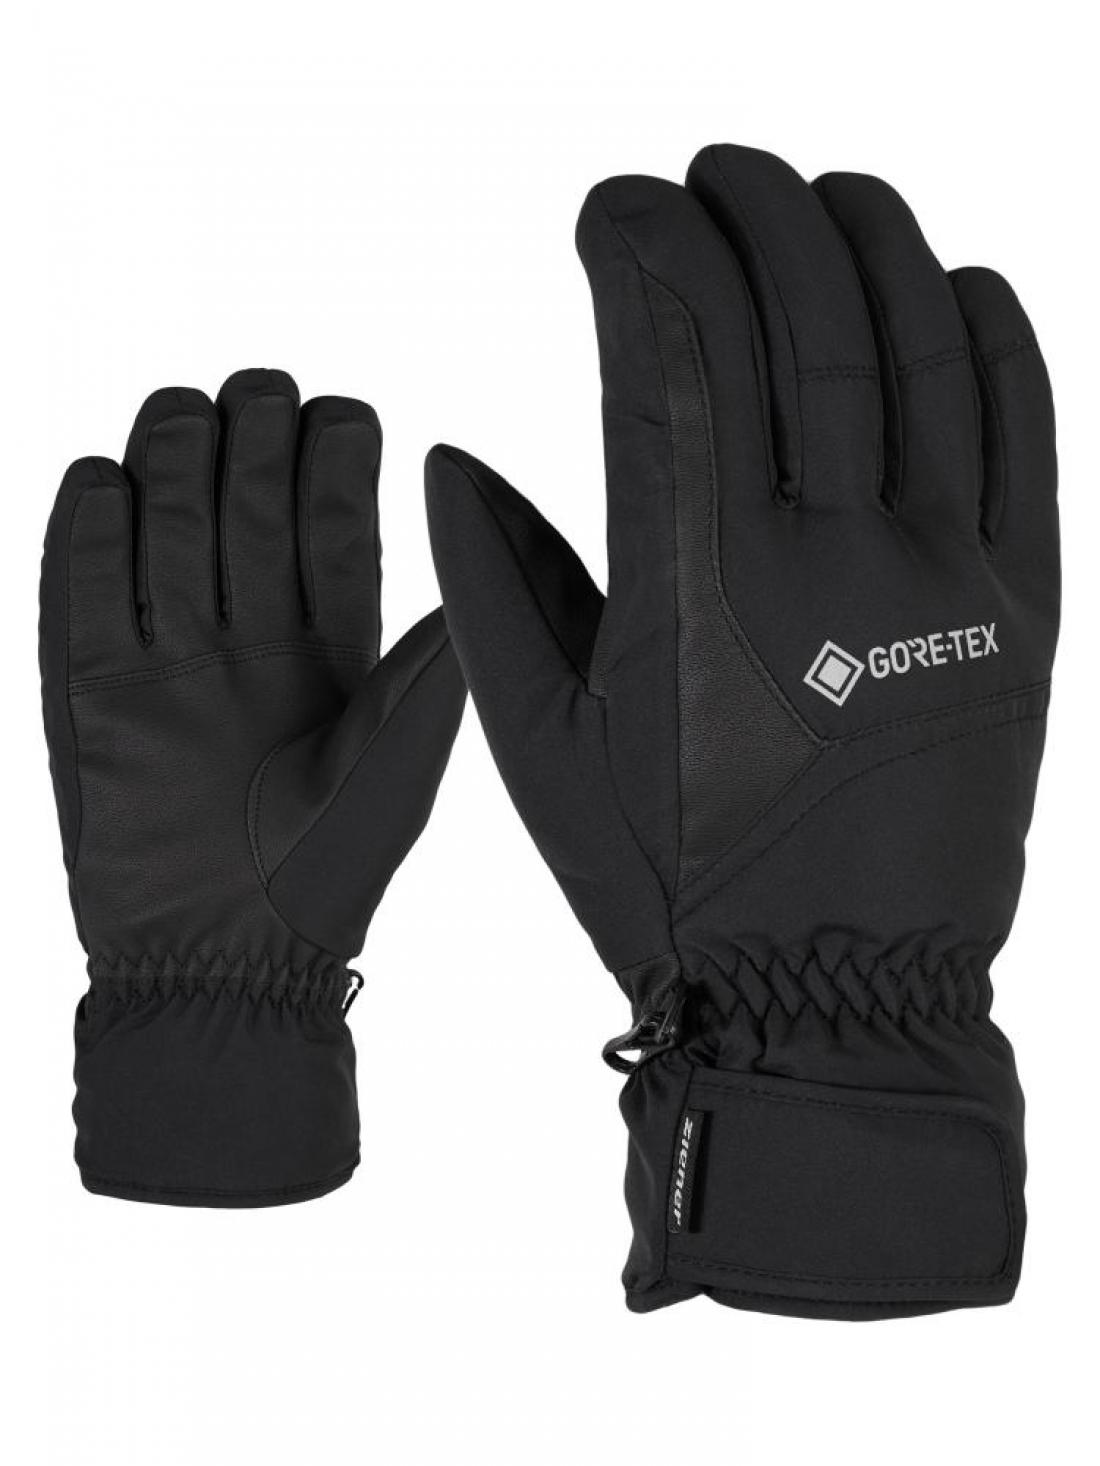 ZIENER Garwen GTX glove ski alpine, black